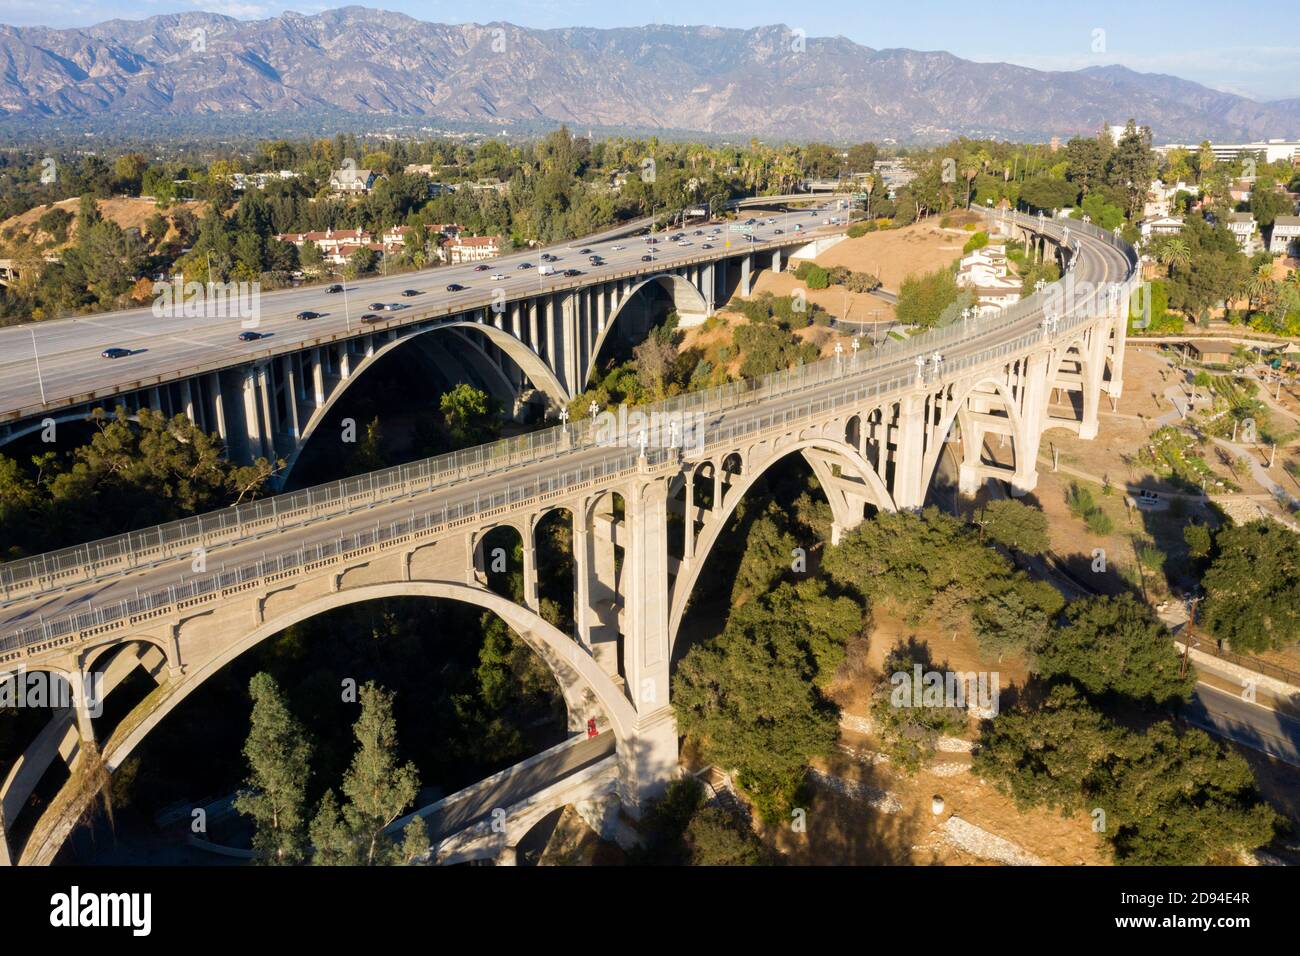 Vista aérea del histórico puente arqueado de la calle Colorado sobre el Arroyo Seco en Pasadena, California Foto de stock